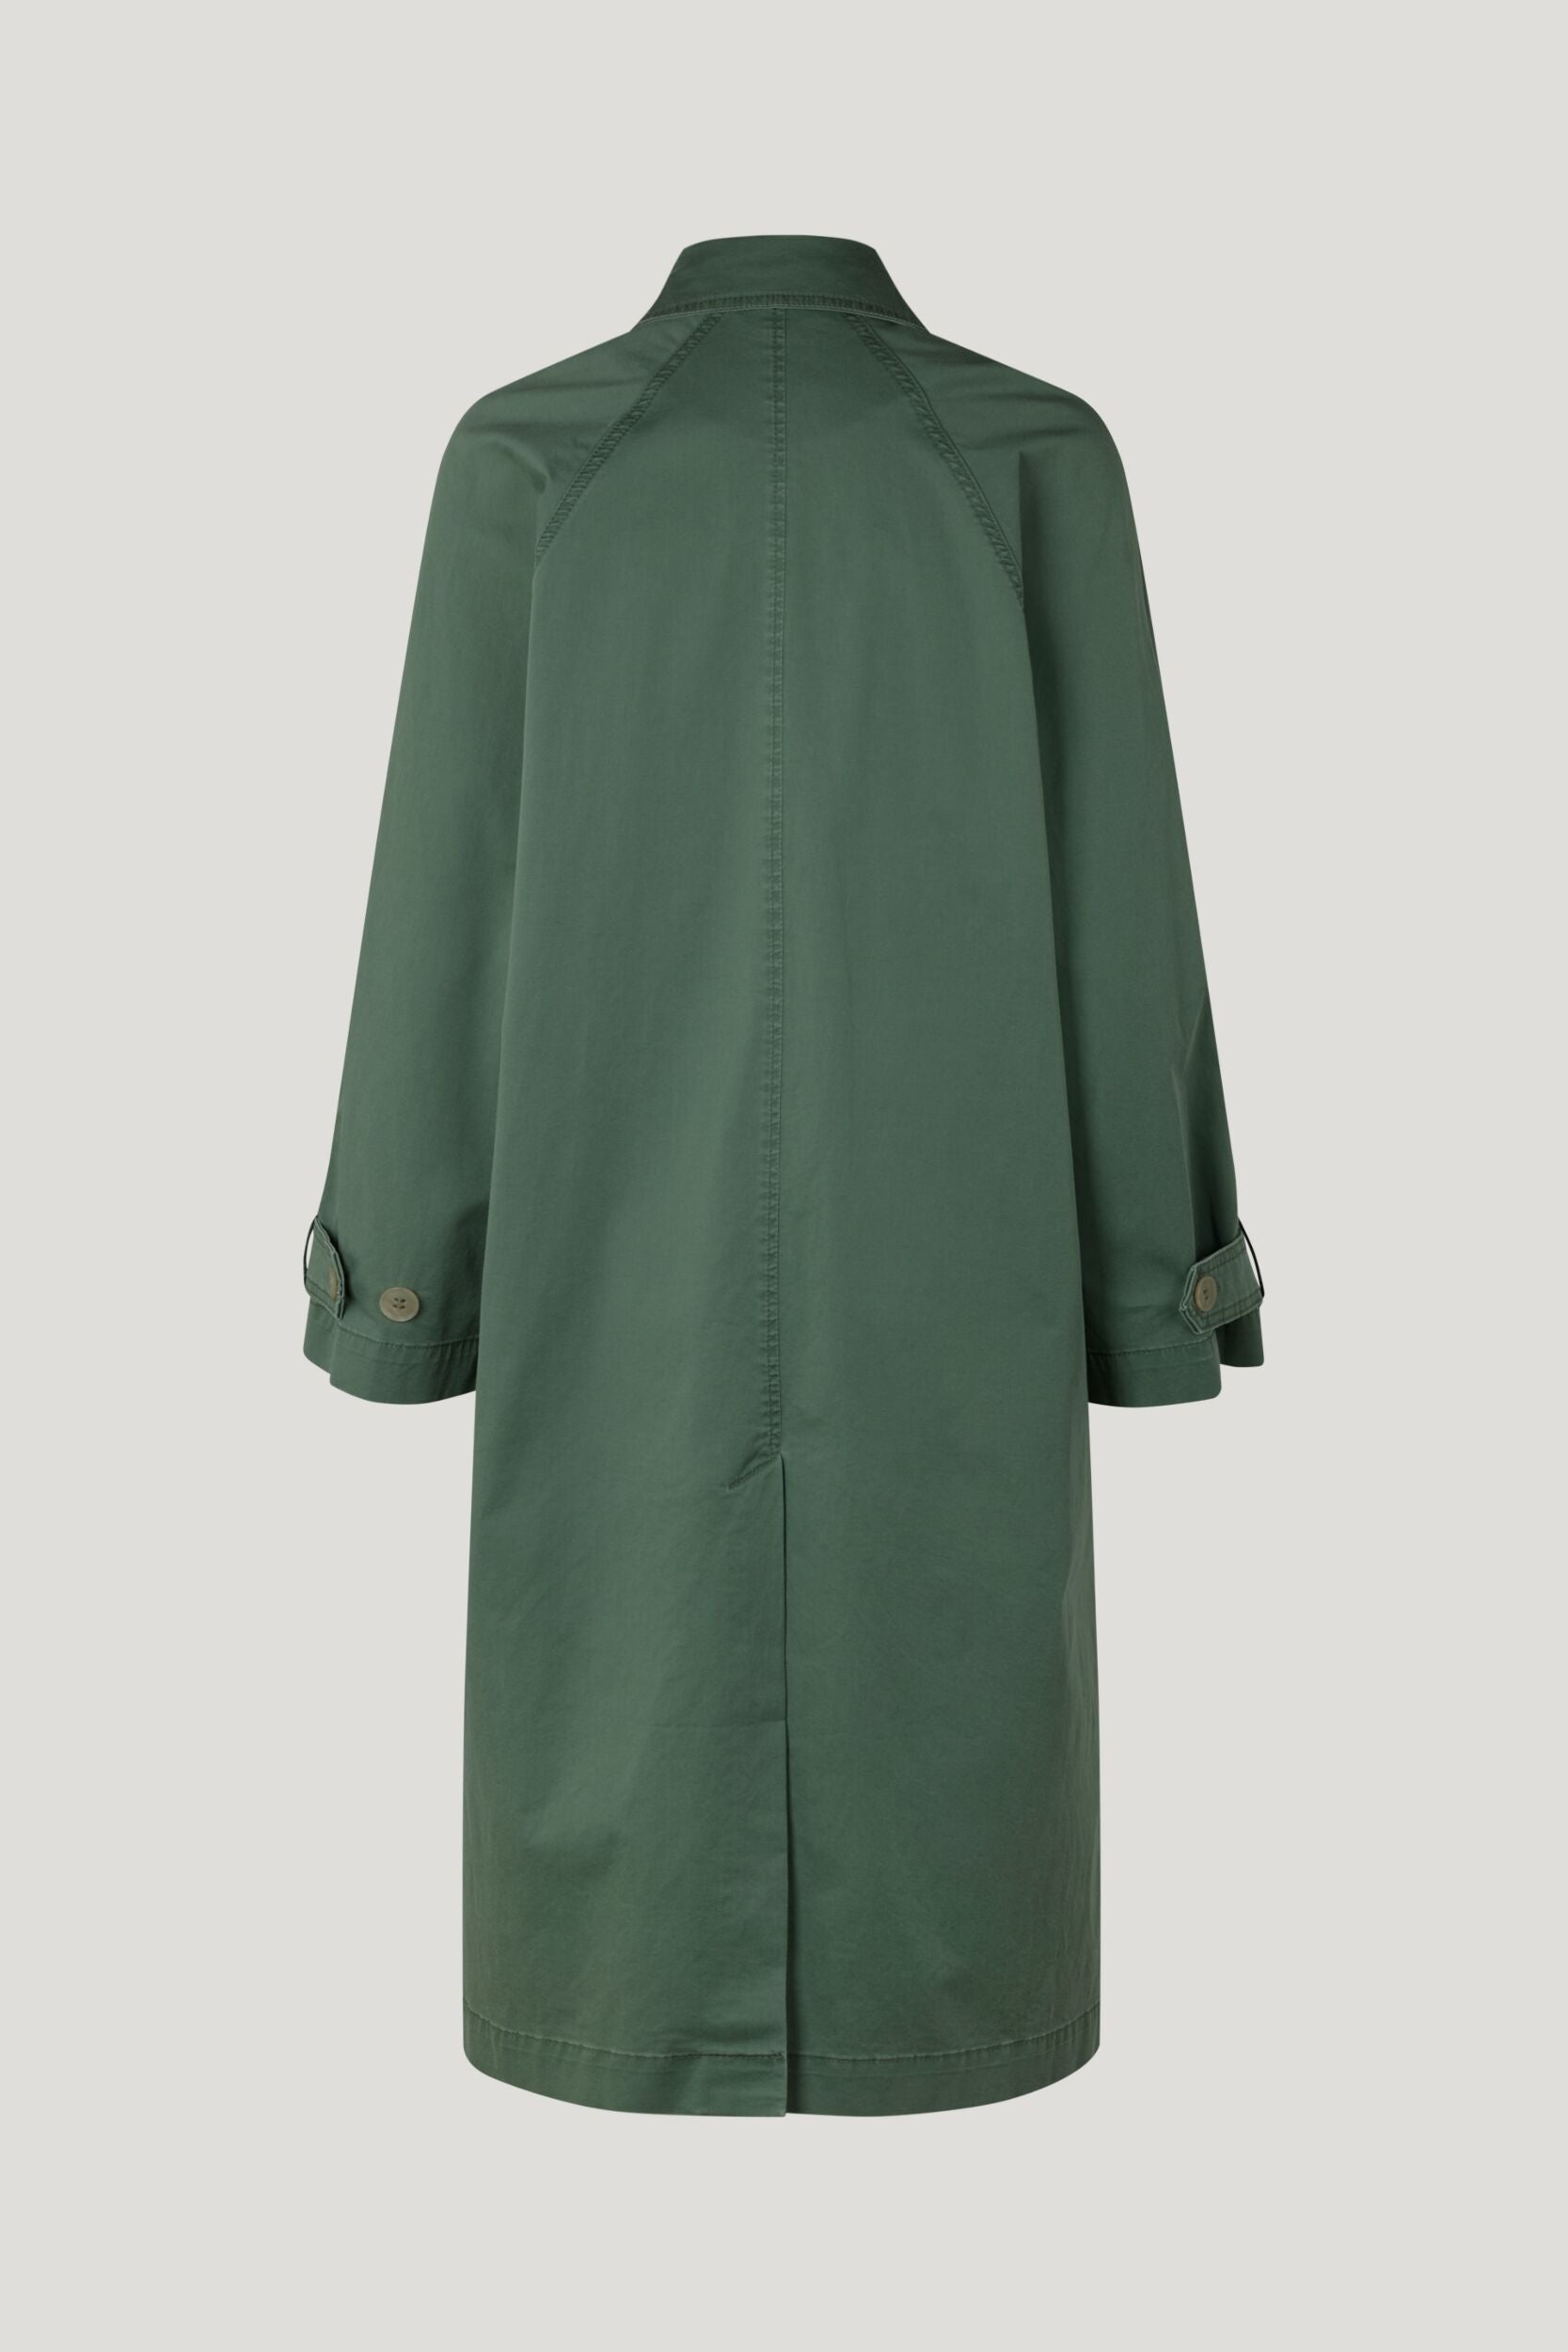 Baum - Delani Coat